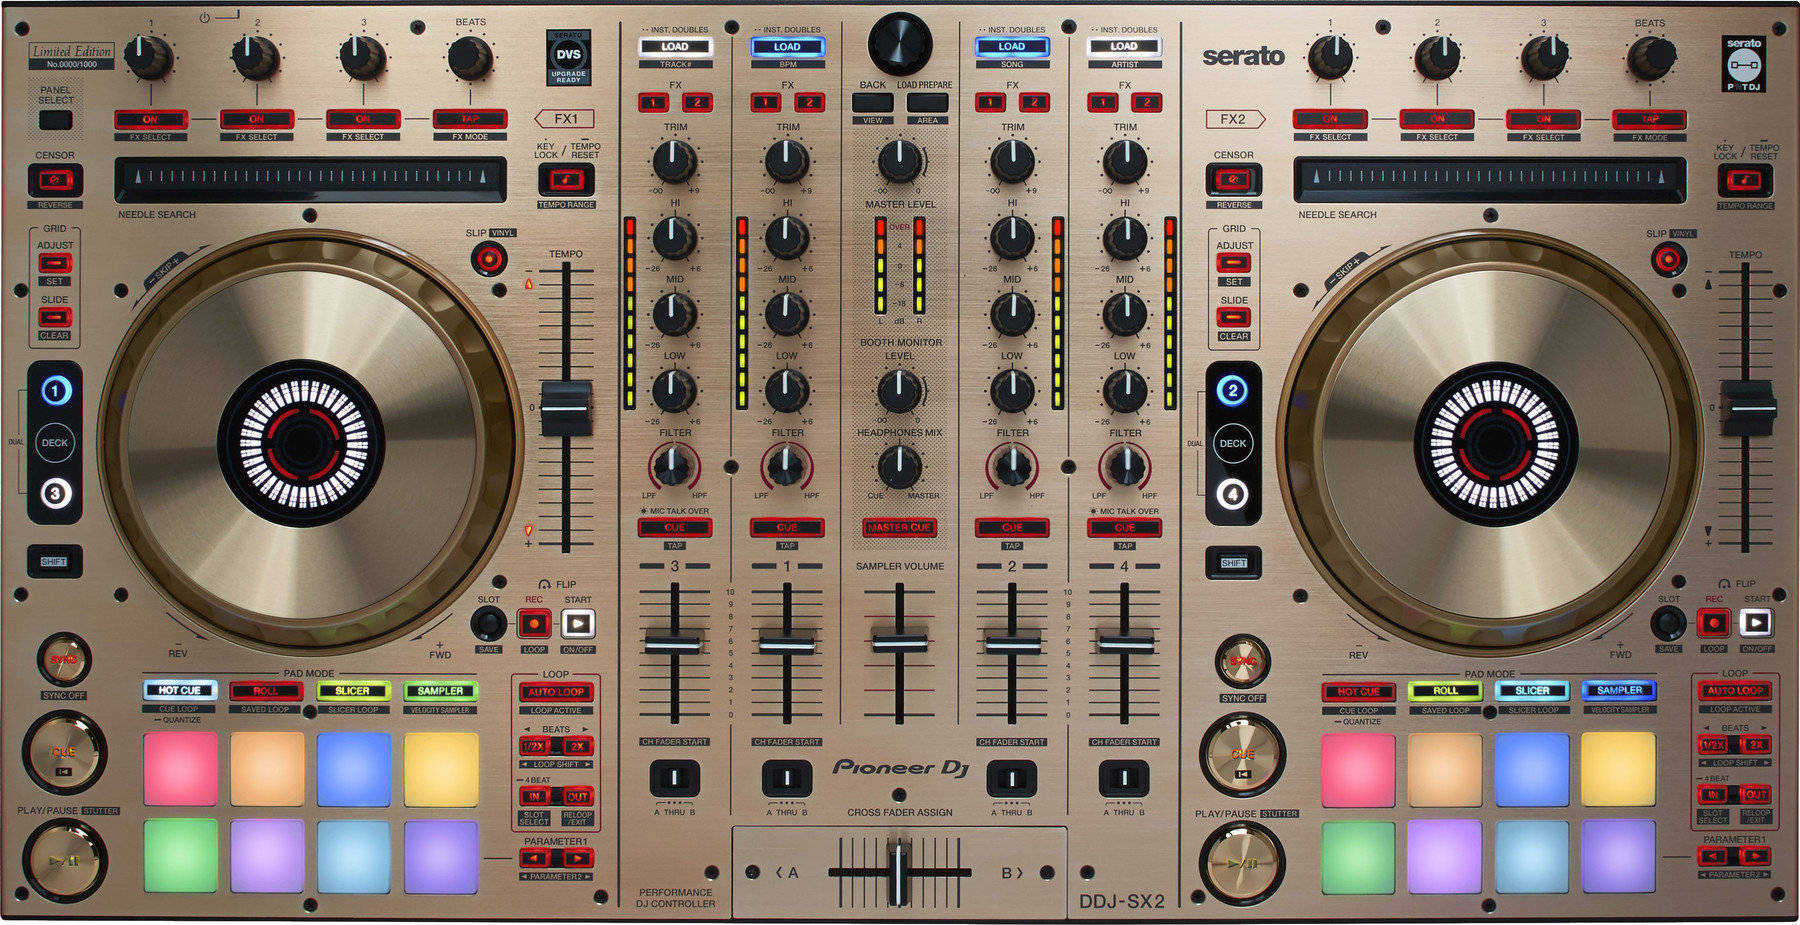 Kontroler DJ Pioneer Dj DDJ-SX2-N